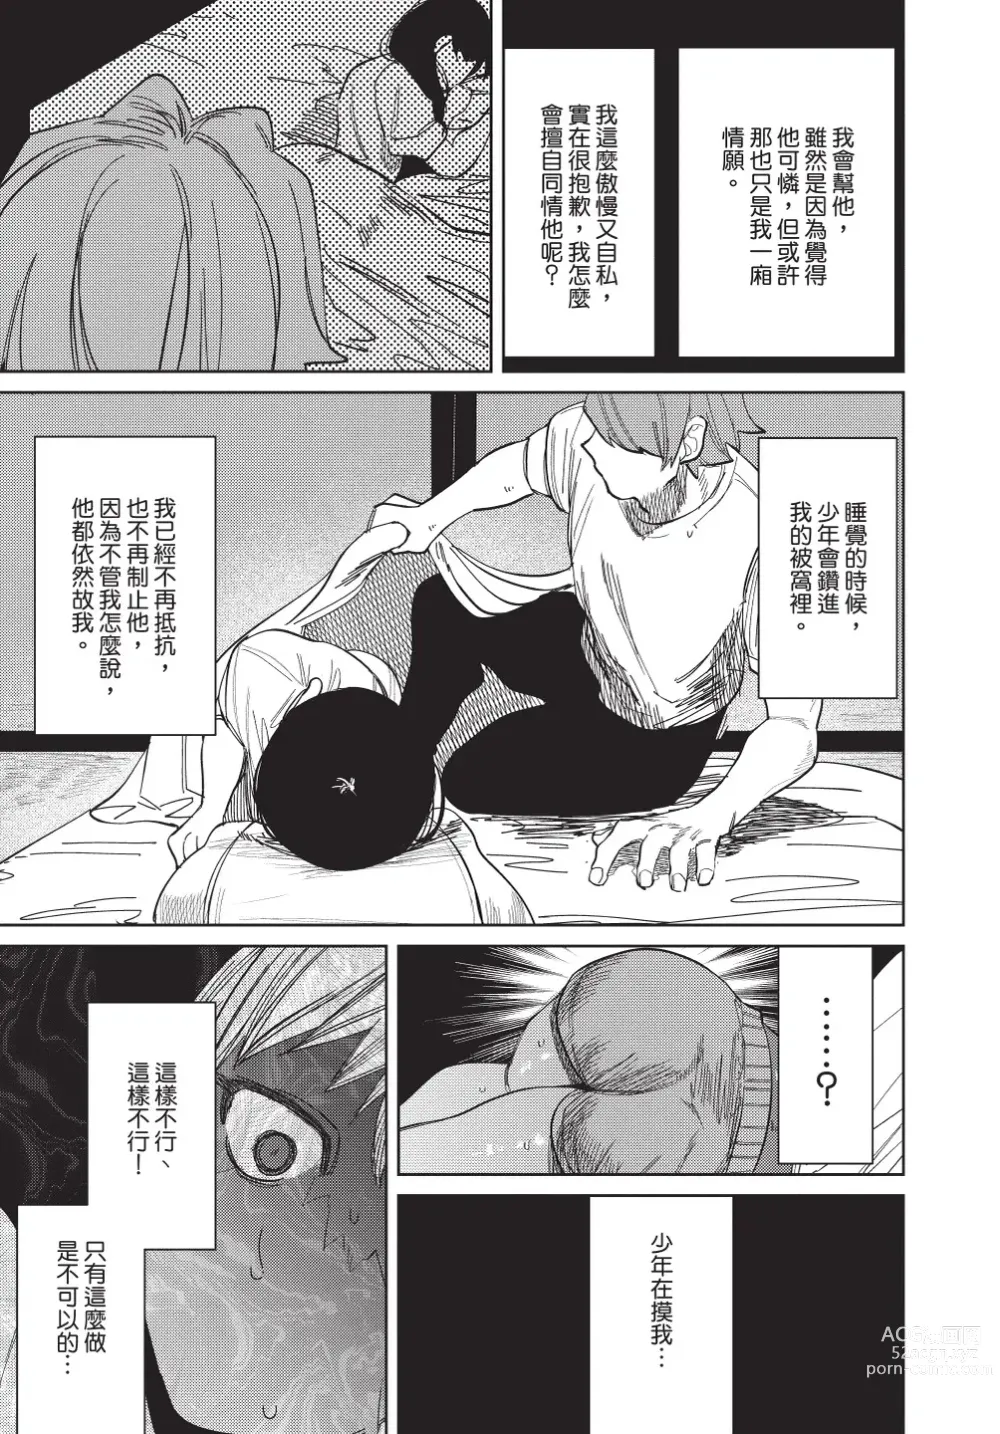 Page 205 of manga 在異世界旅途中拯救我的是一名少年殺手